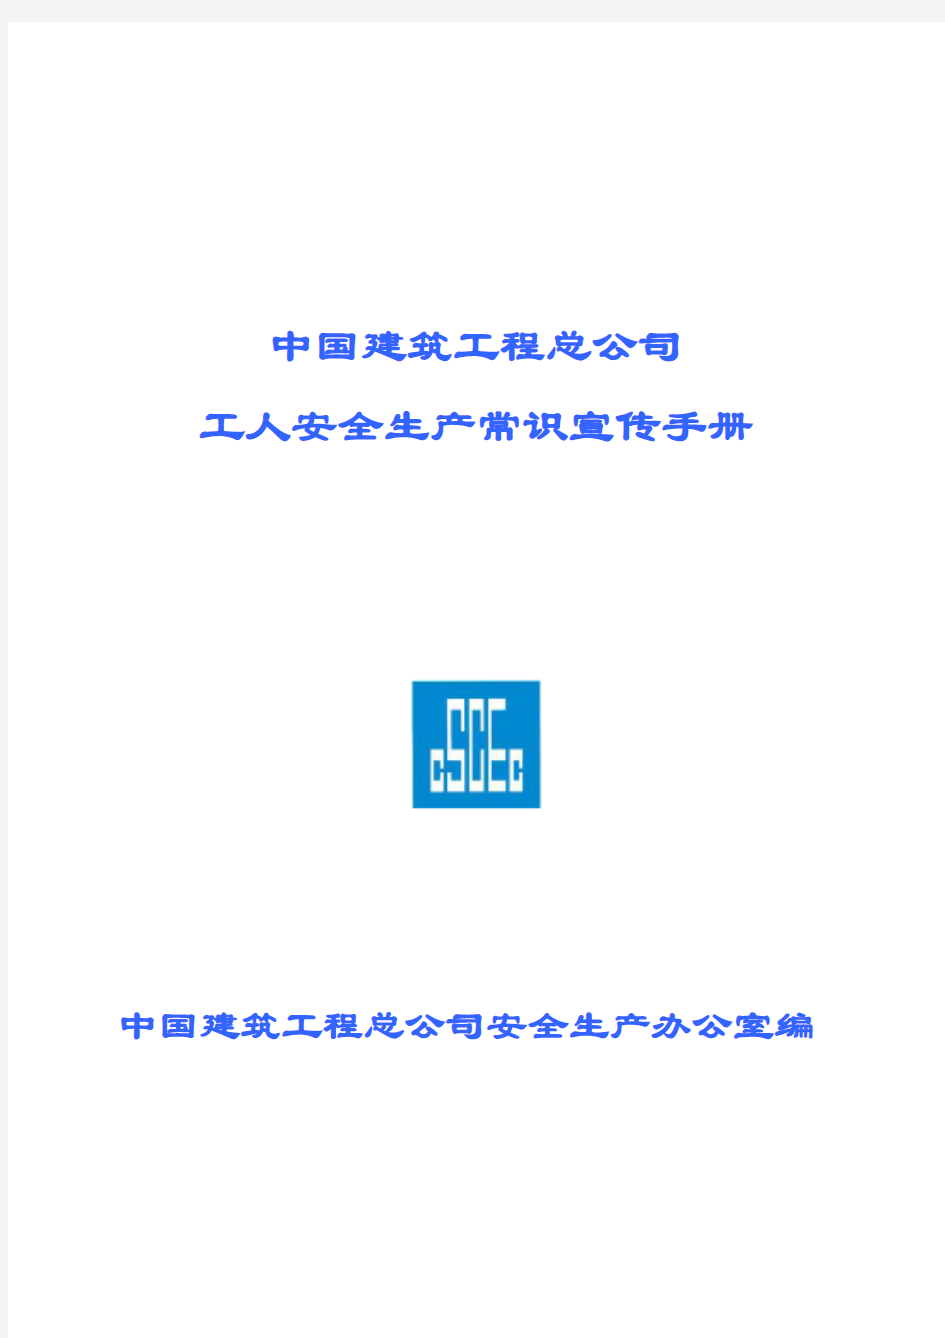 中建总公司《工人安全生产常识宣传手册》(图文)